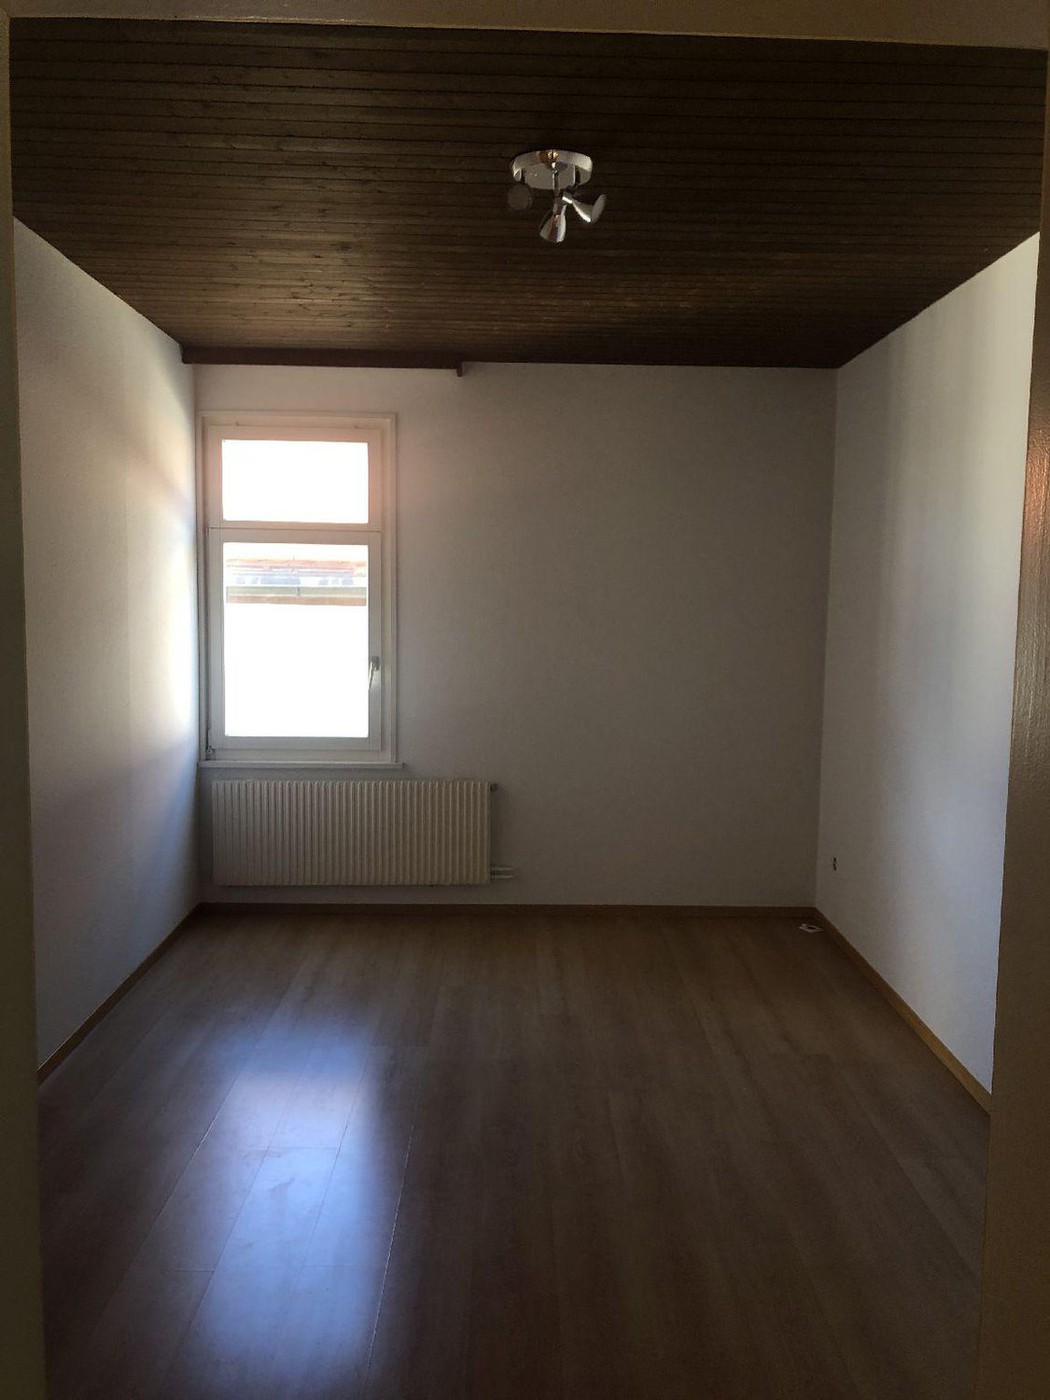 4 Zimmer-Wohnung in Rorschach mieten - Flatfox